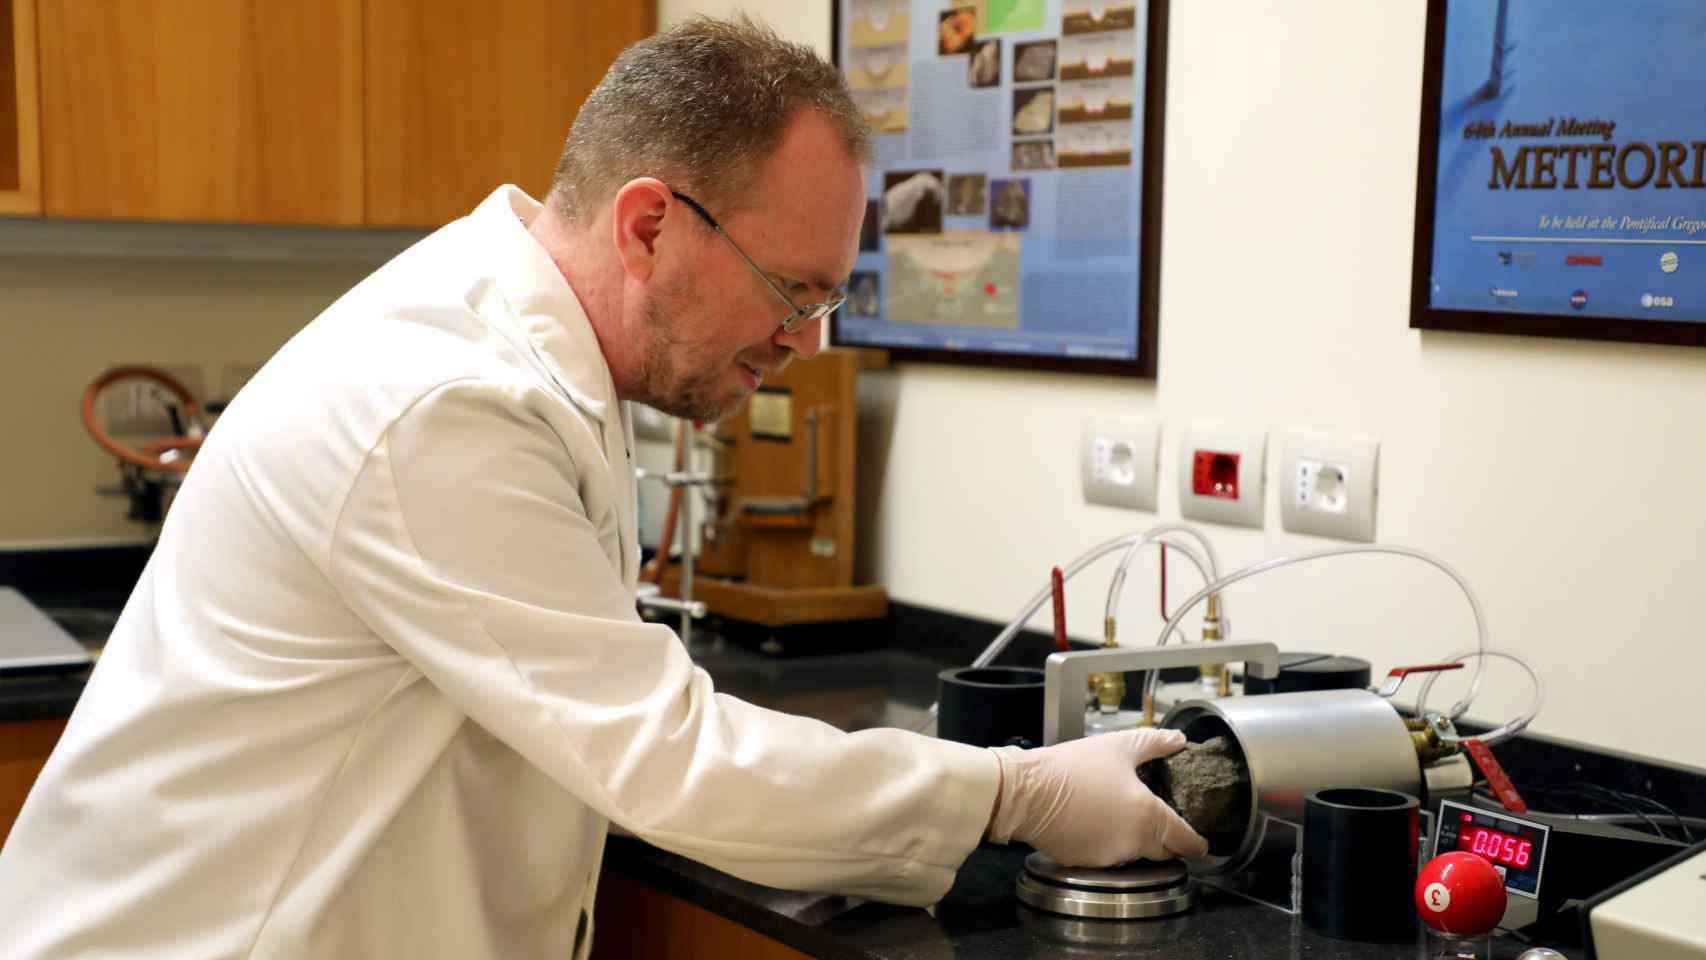 El doctor Robert Macke analiza varias muestras en un laboratorio.